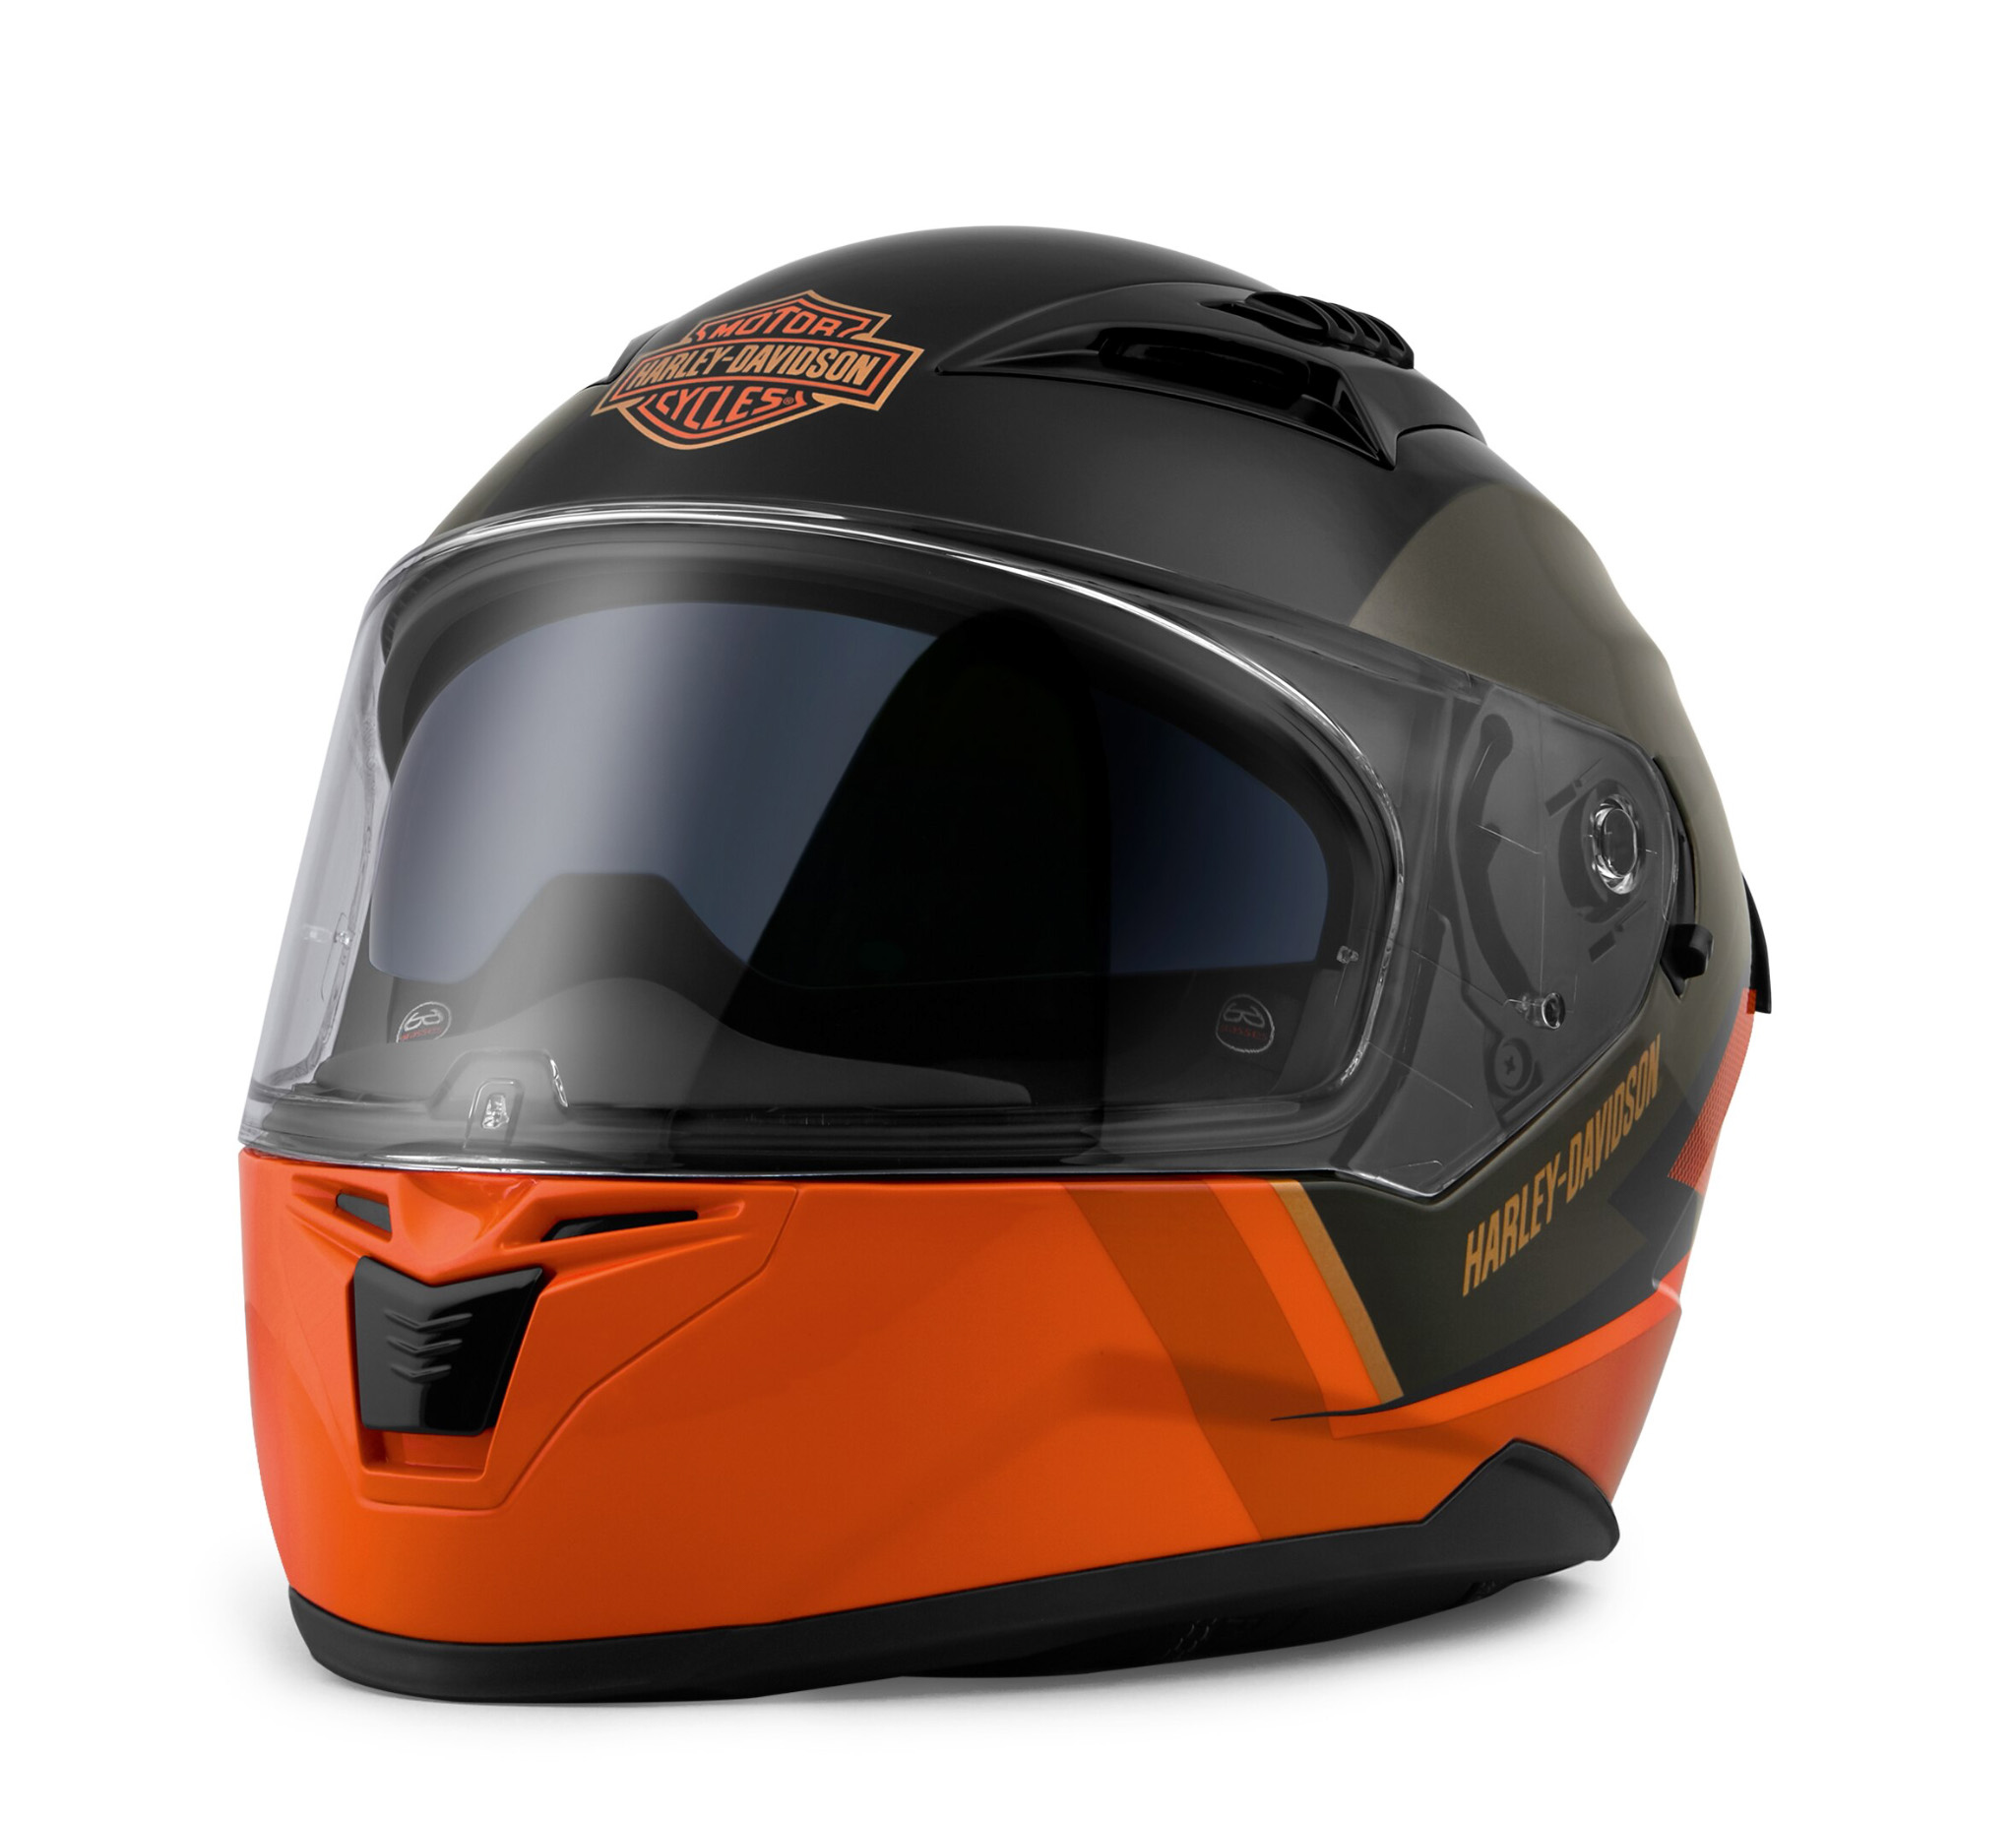 Killian M05 Full Face Helmet 98114 20vx Harley Davidson Europe